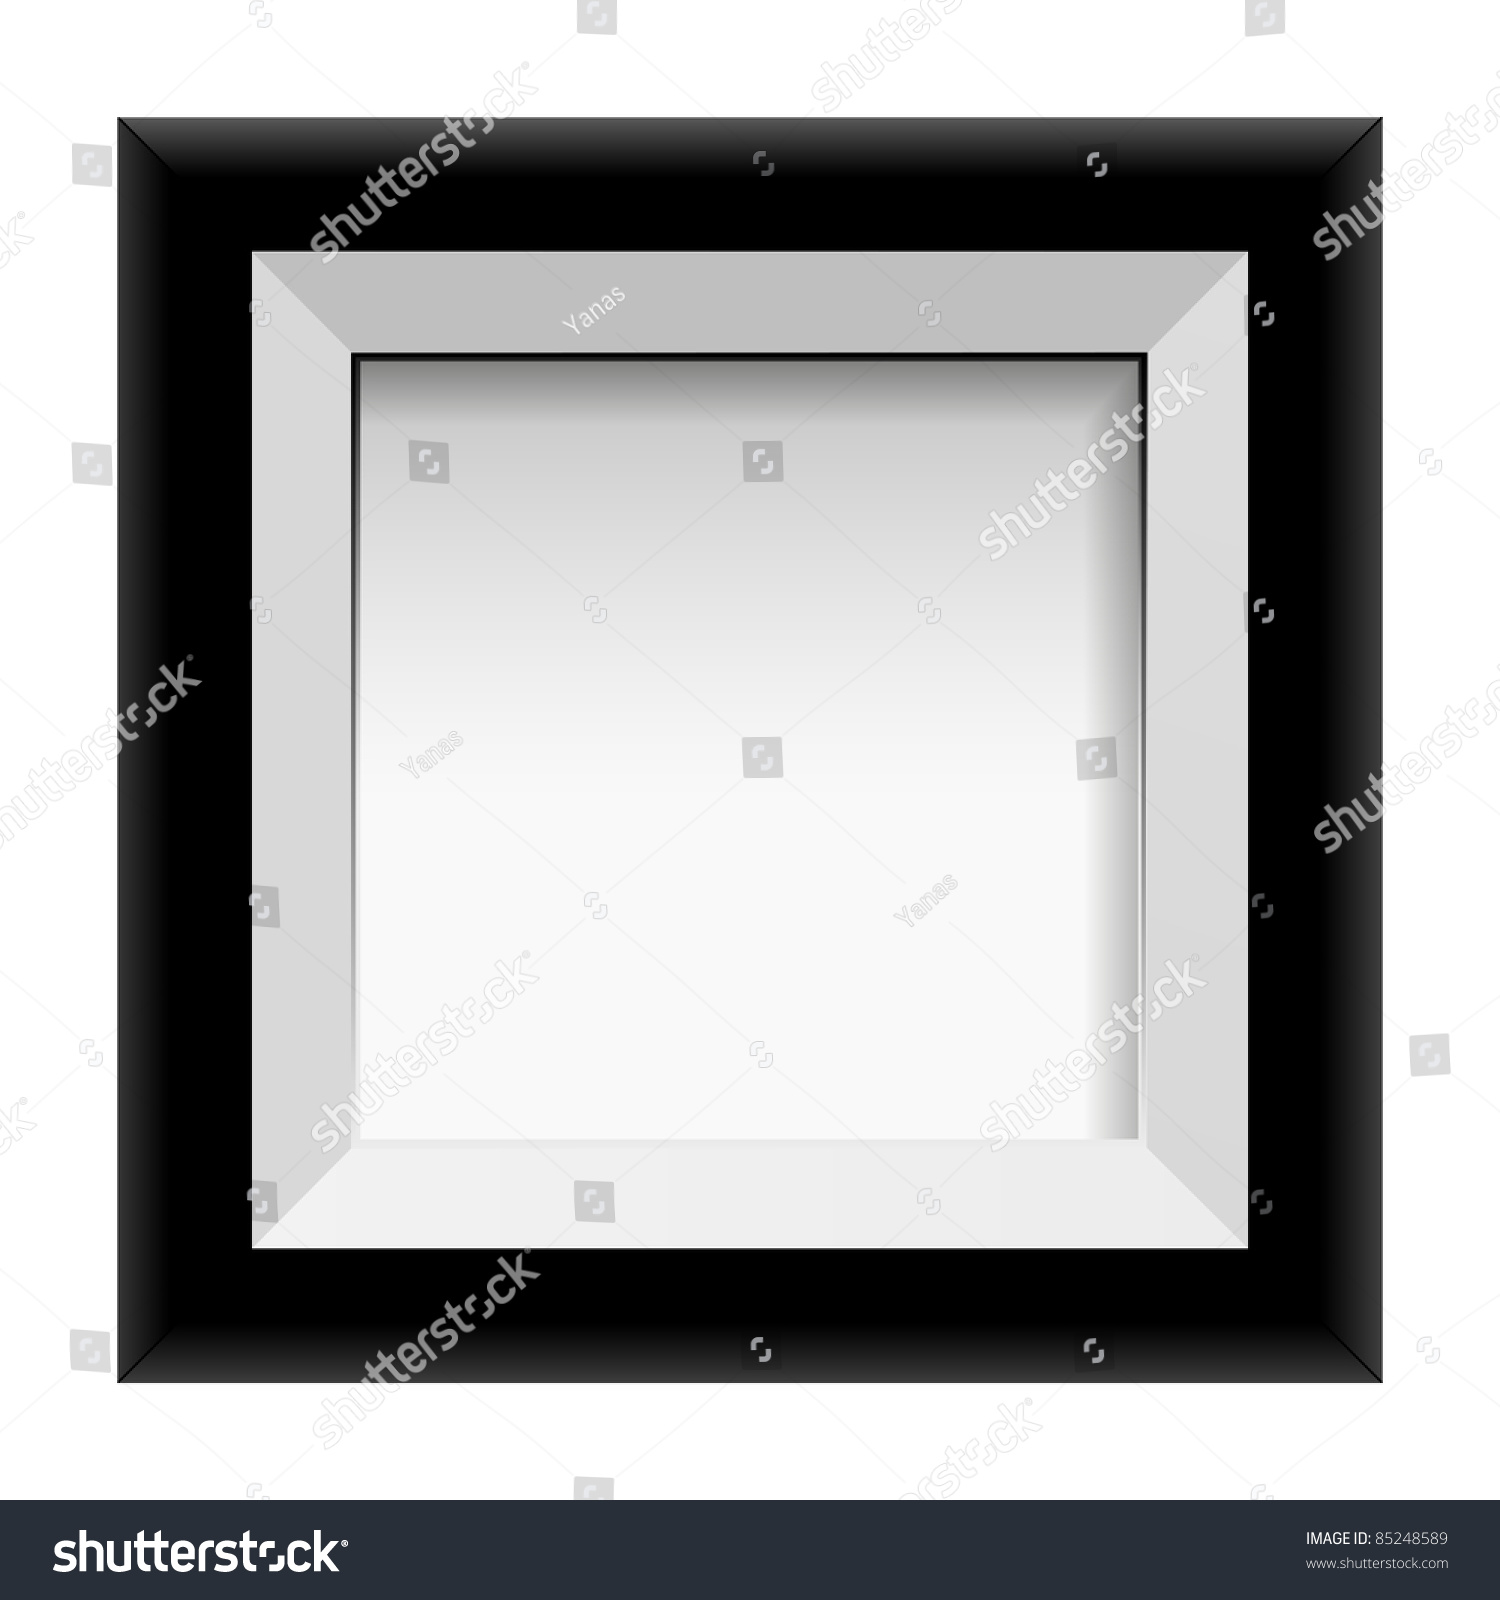 Black Photo Frame. Vector - 85248589 : Shutterstock